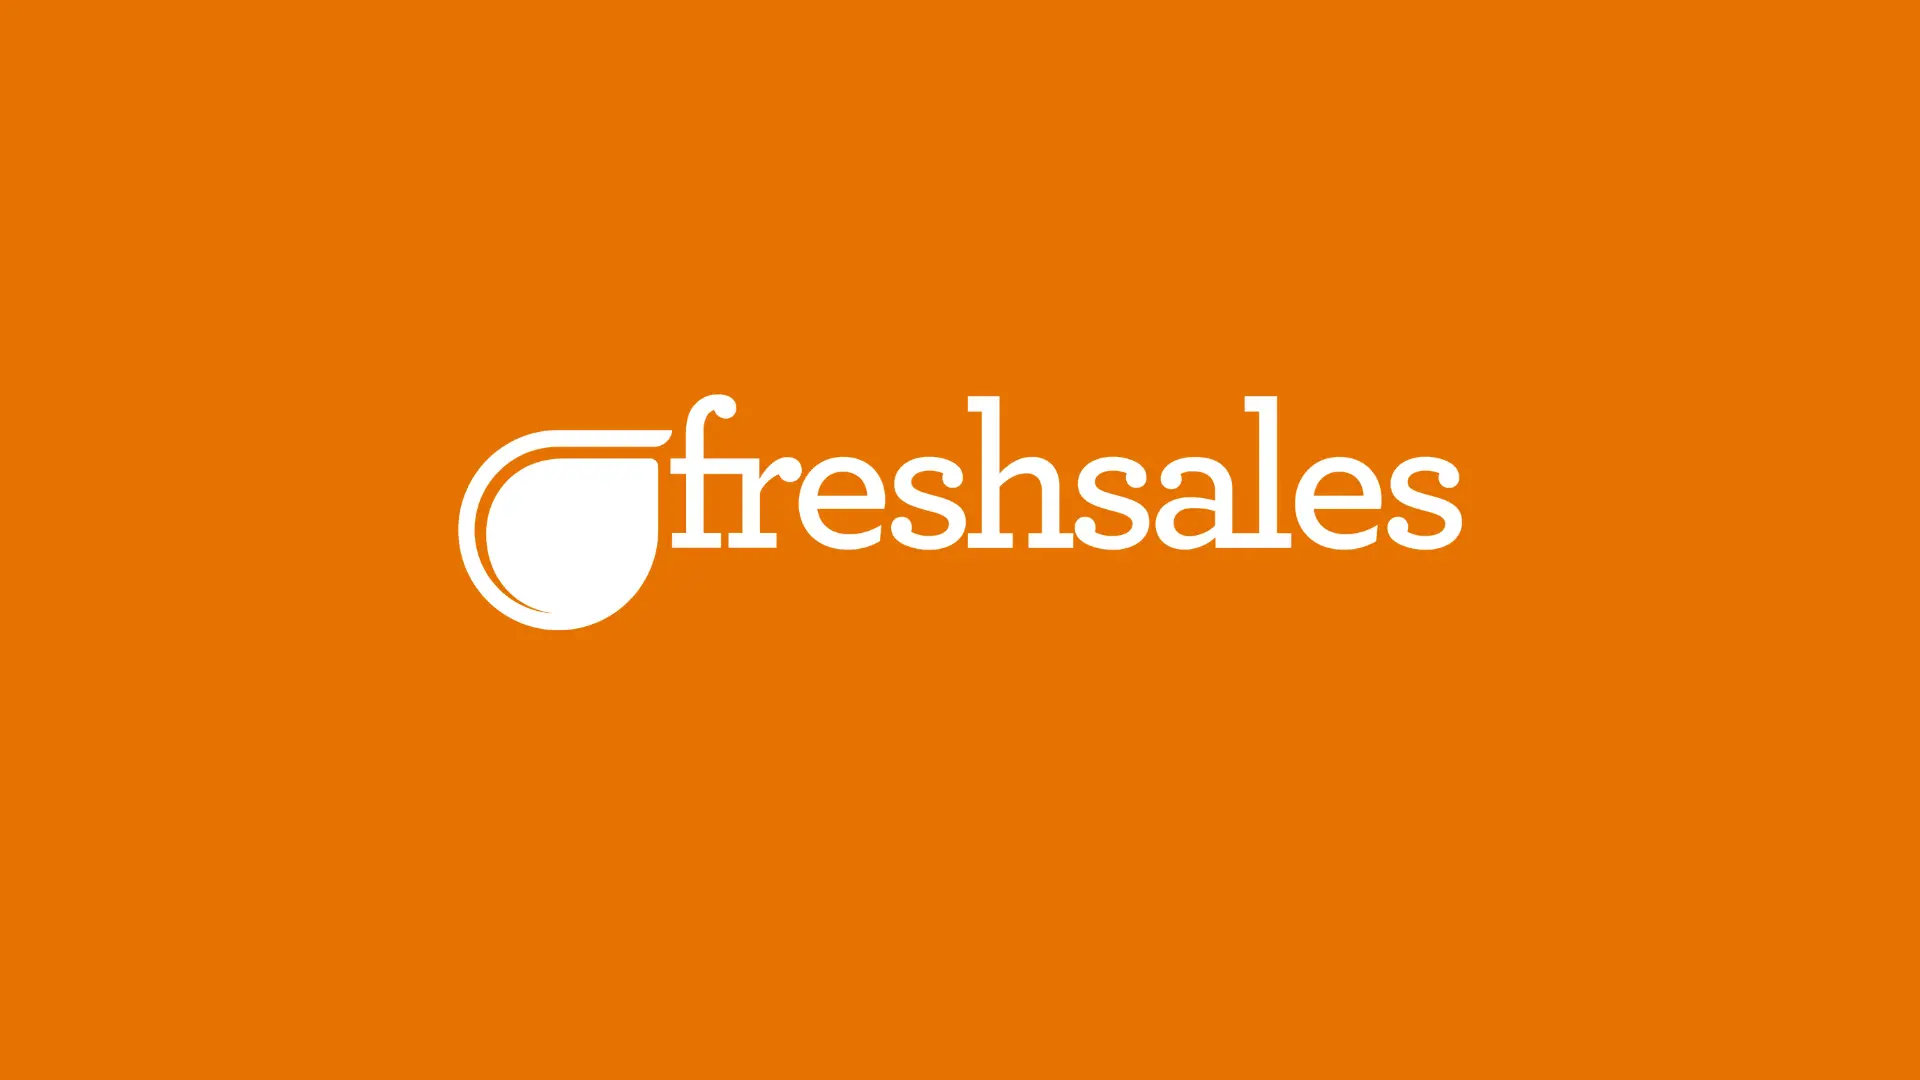 FreshSales brand